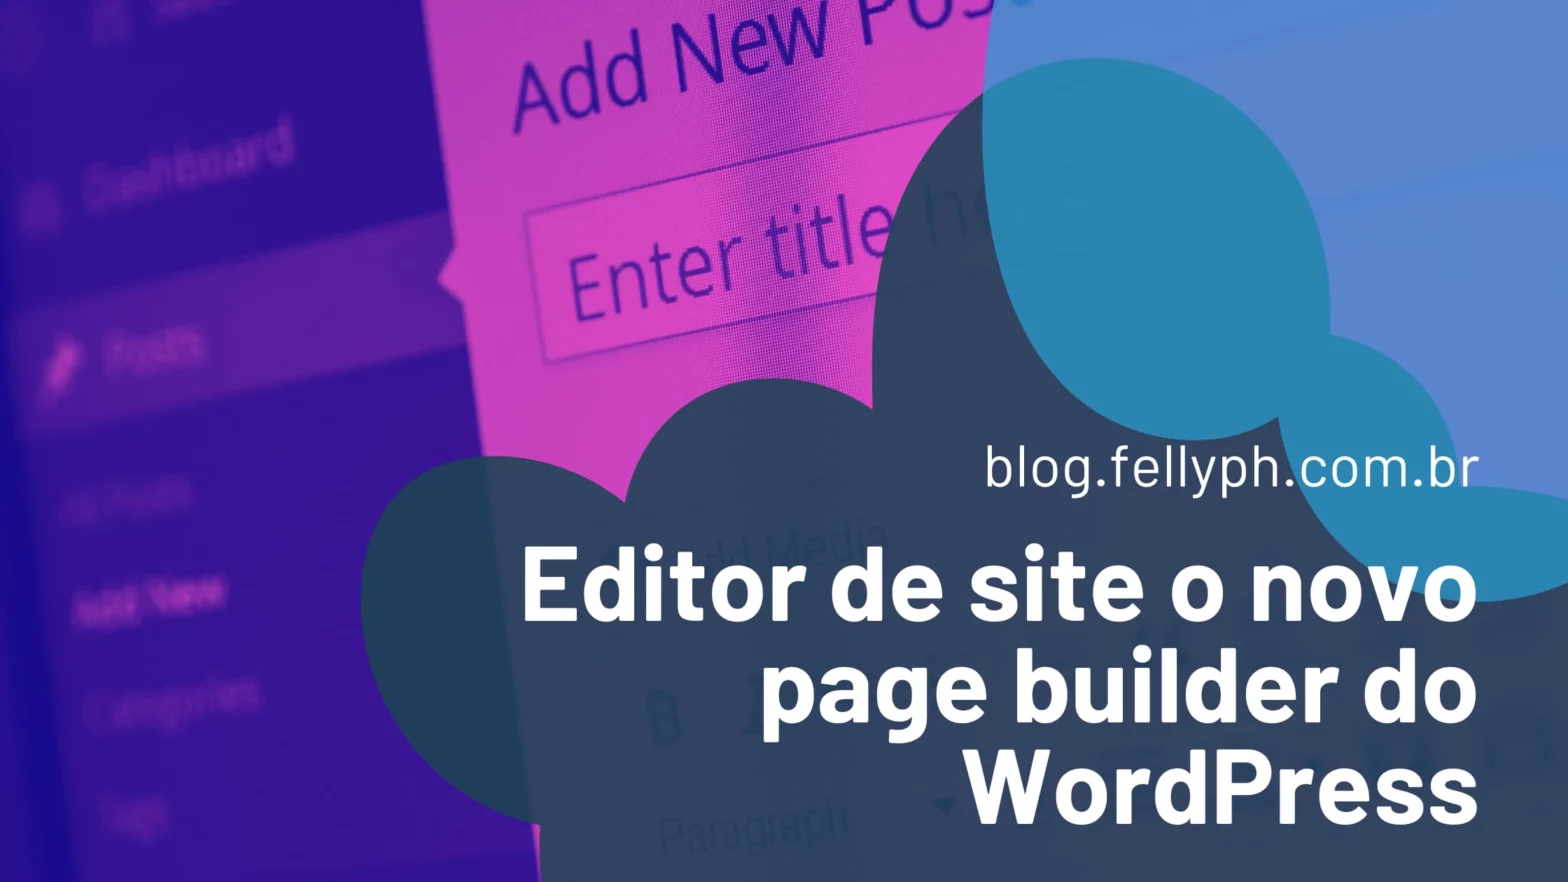 Blog fellyph cintra - novo editor de site o page builder nativo do WordPress